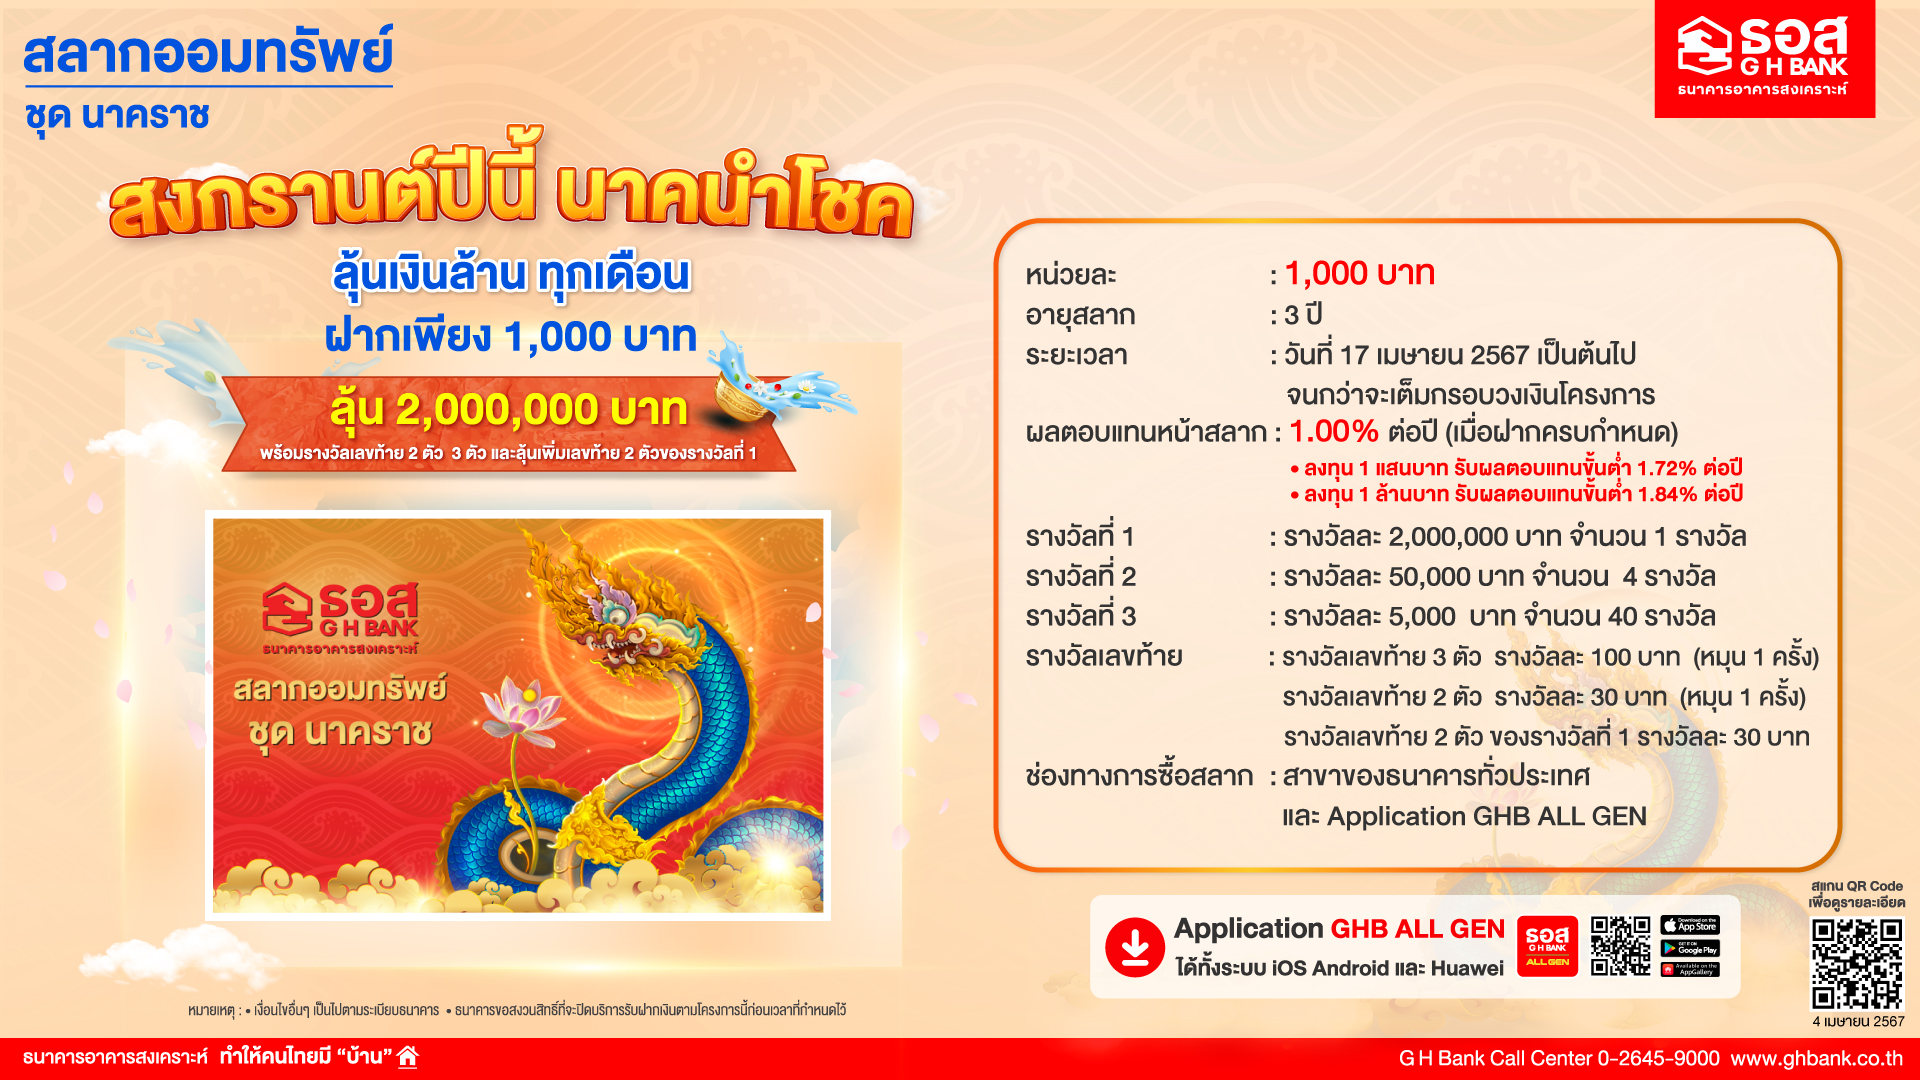 ธอส. ต้อนรับวันปีใหม่ไทย เปิดตัวสลาก “นาคราช” เพียงหน่วยละ 1,000 บาทดอกเบี้ยสูง พร้อมลุ้นรางวัลใหญ่และรางวัลเลขท้าย 2 ตัว และ 3 ตัว ทุกเดือนตลอด 3 ปี